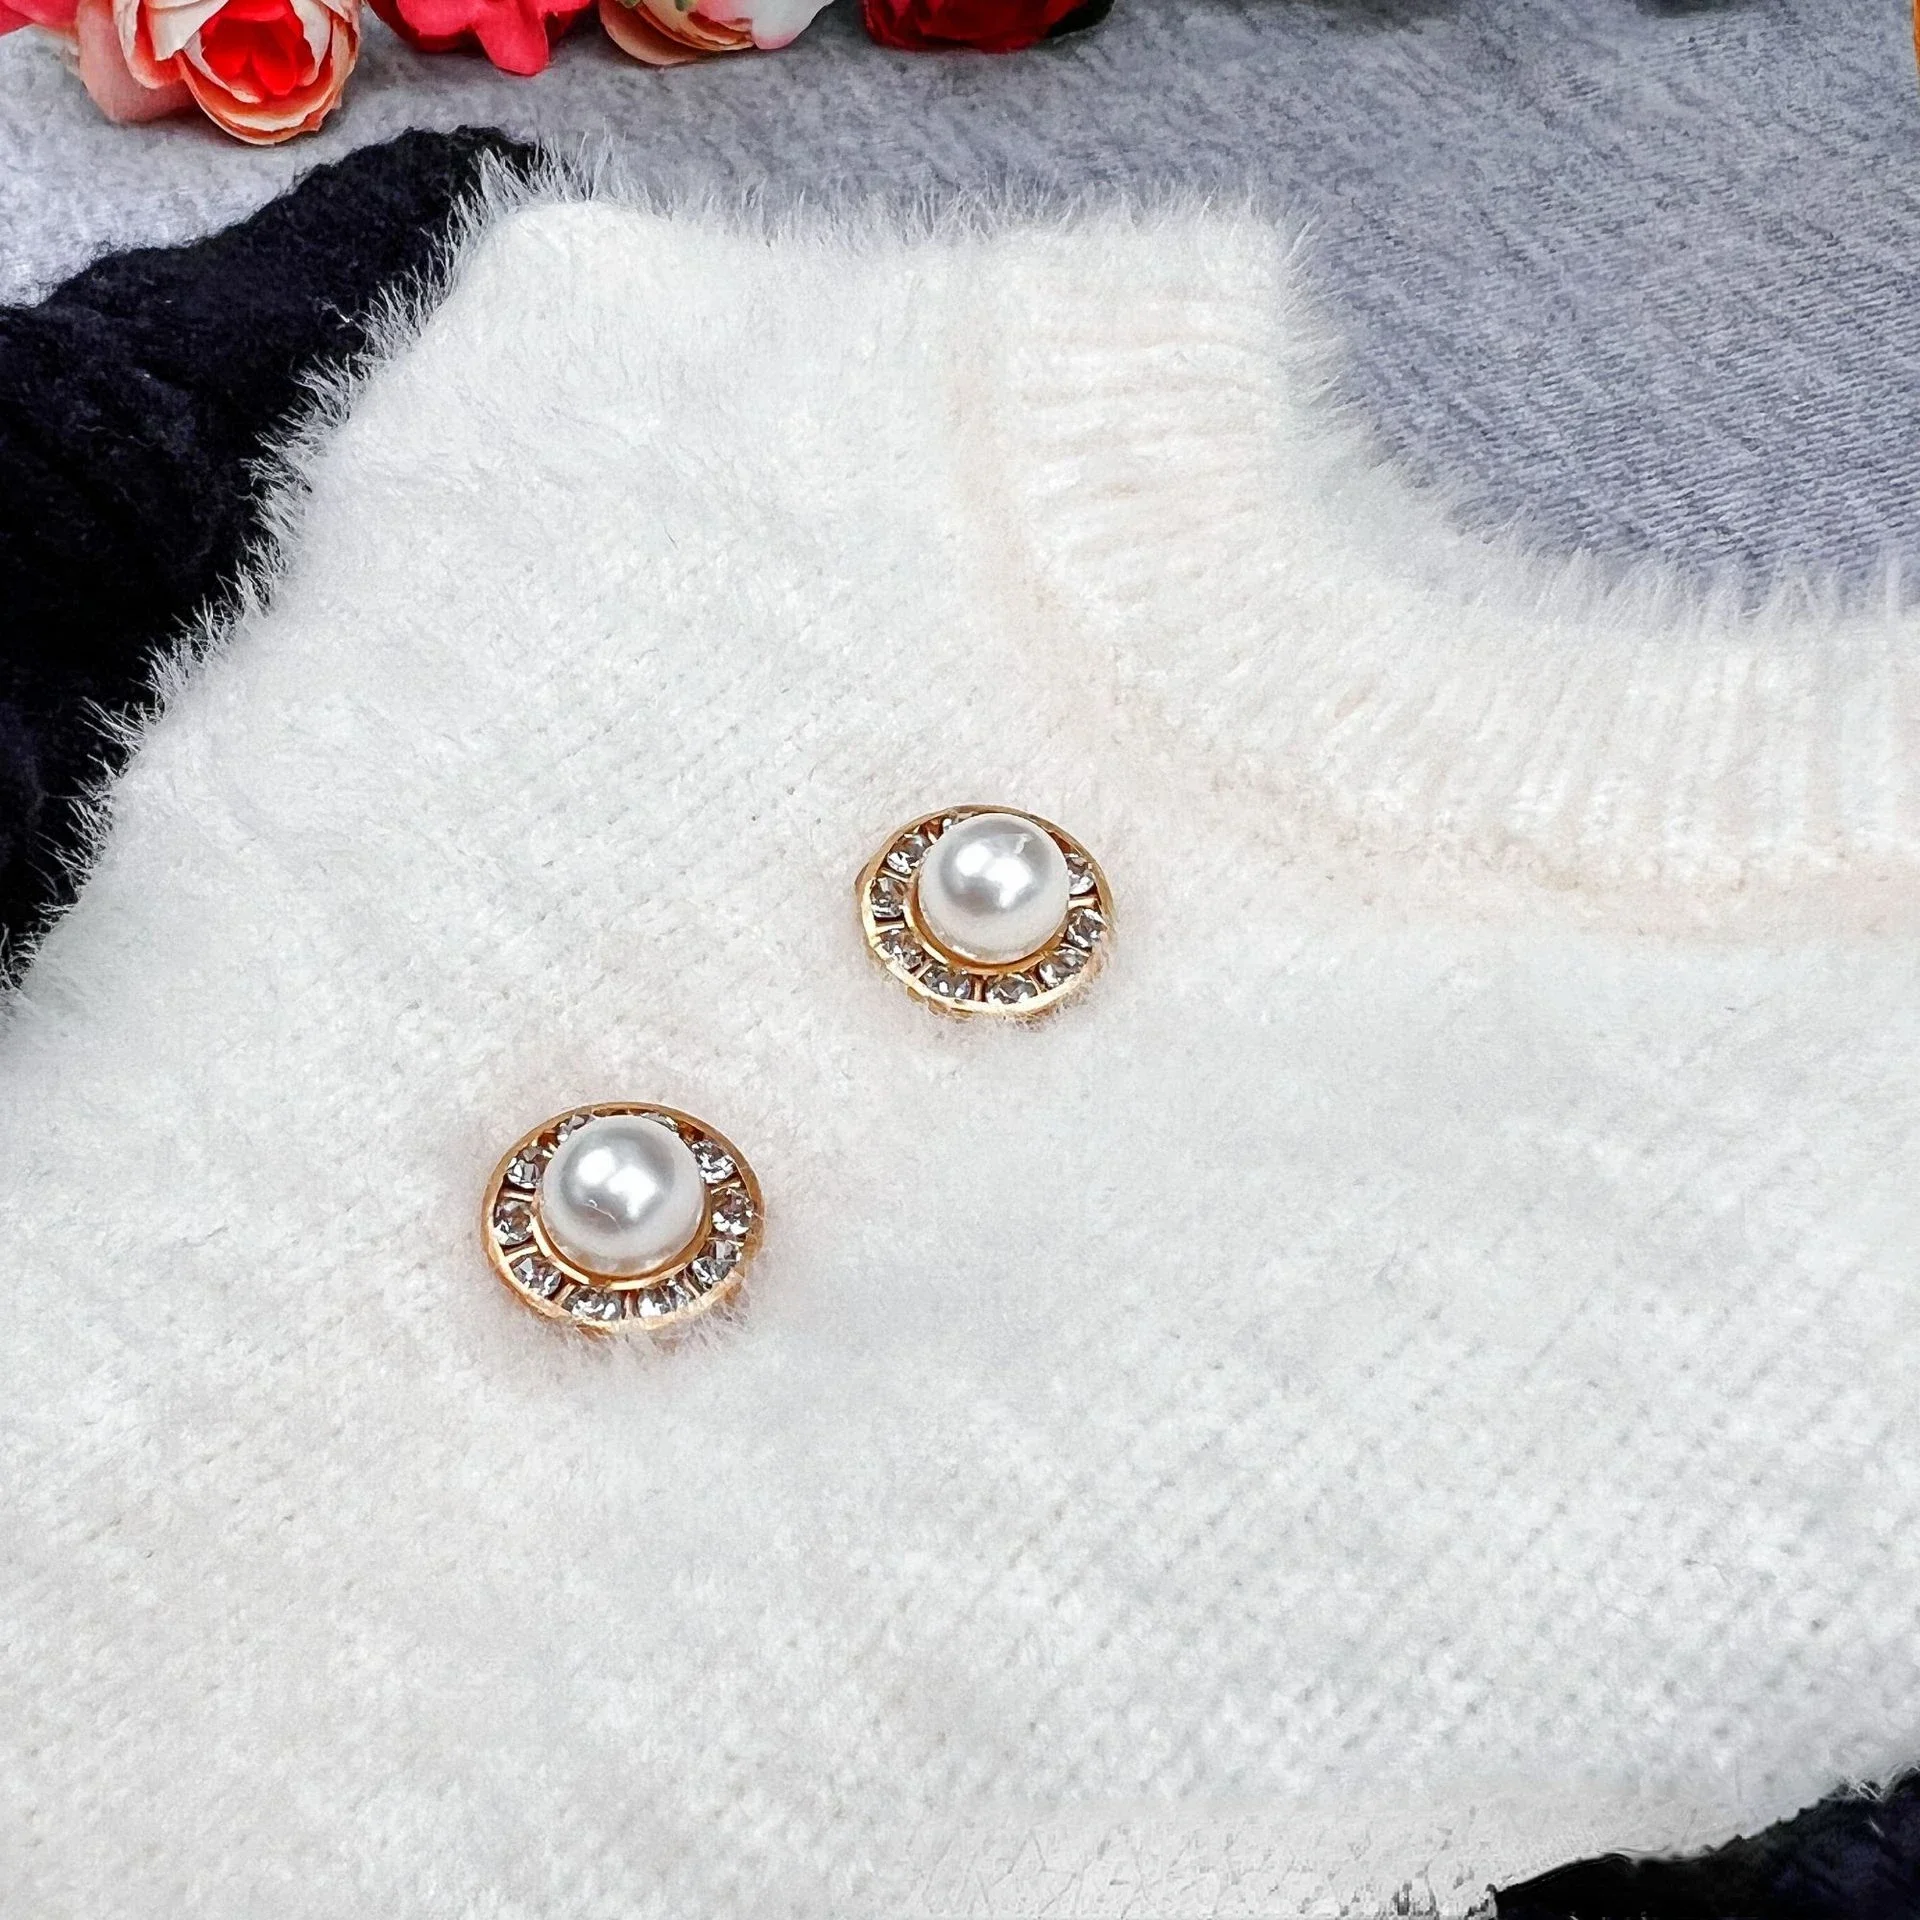 Jesienno-zimowa sweter dla zwierząt domowych w stylu księżniczki spódnica z małe latające rękawem obszyta biała perła futrzana słodkie zwierzątko sweter dla zwierząt domowych obroża dla kociaka pieska z dzianiny